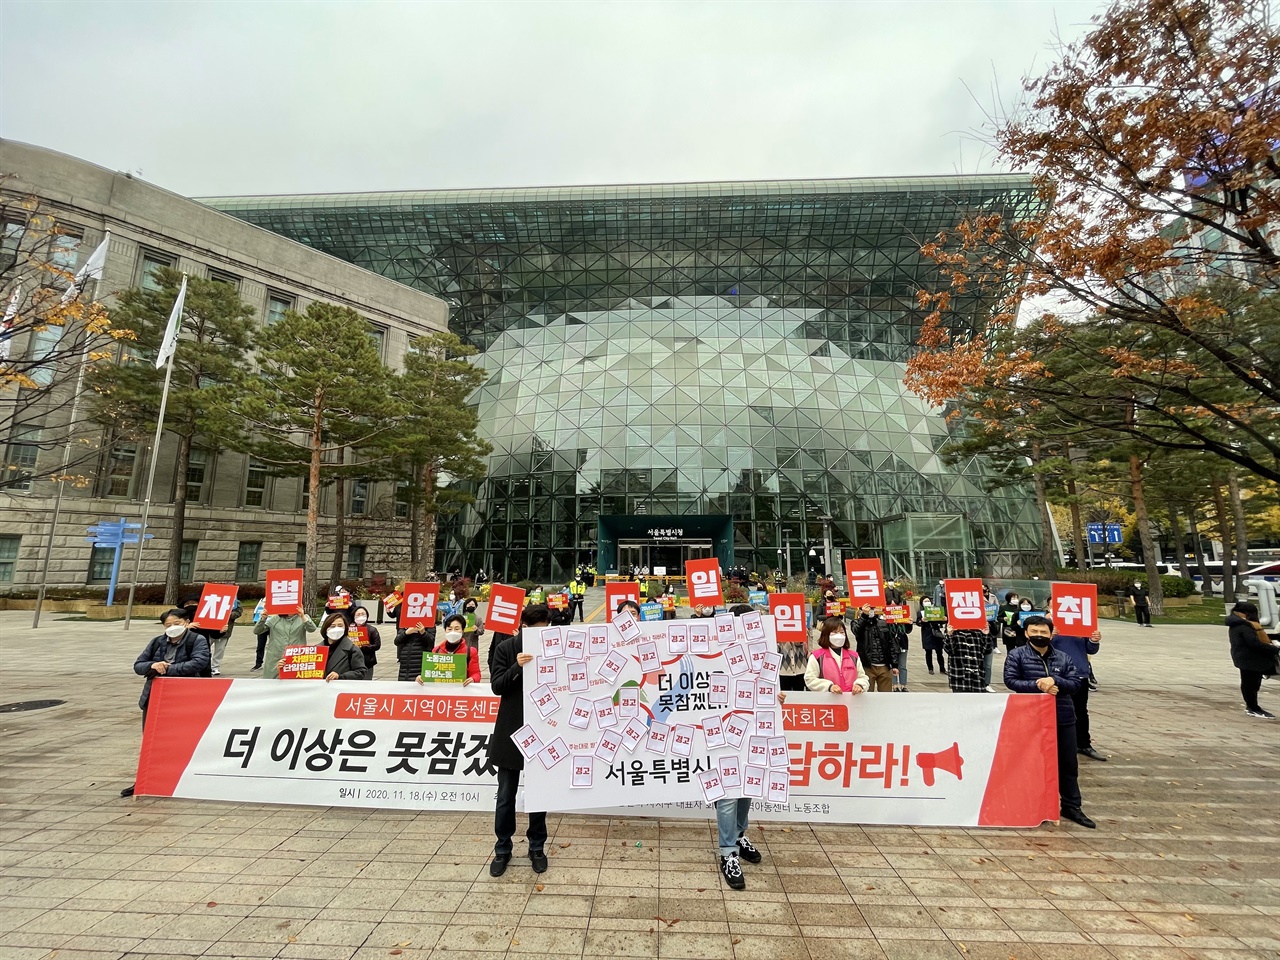 서울시 지역아동센터 차별없는 단일임금제를 요구하는 13차 기자회견이 11월 18일에 열렸다. 